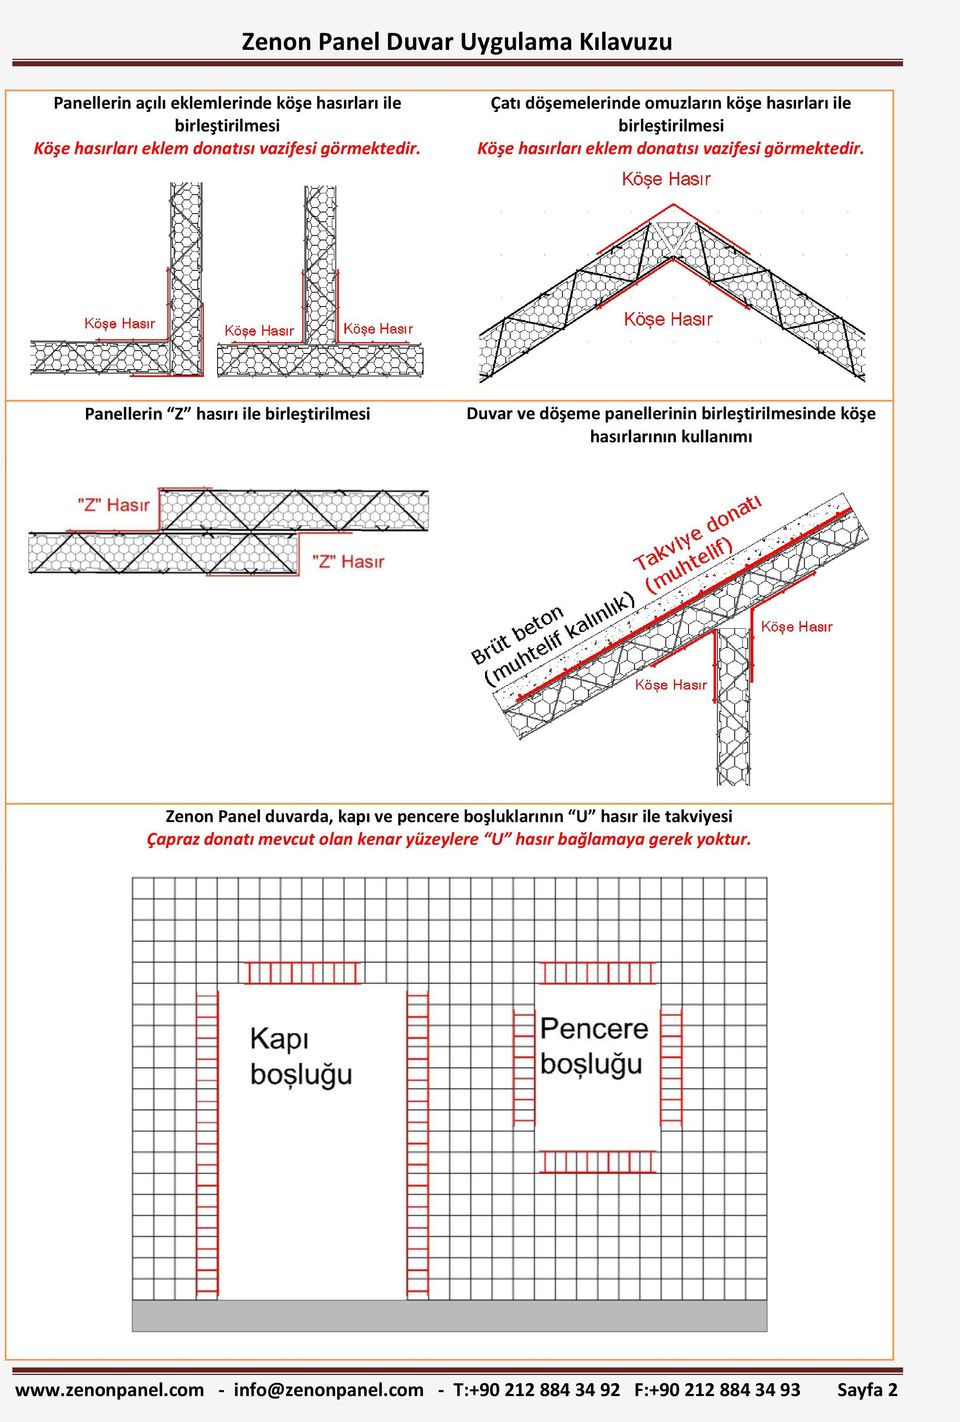 Panellerin Z hasırı ile birleştirilmesi Duvar ve döşeme panellerinin birleştirilmesinde köşe hasırlarının kullanımı Zenon Panel duvarda, kapı ve